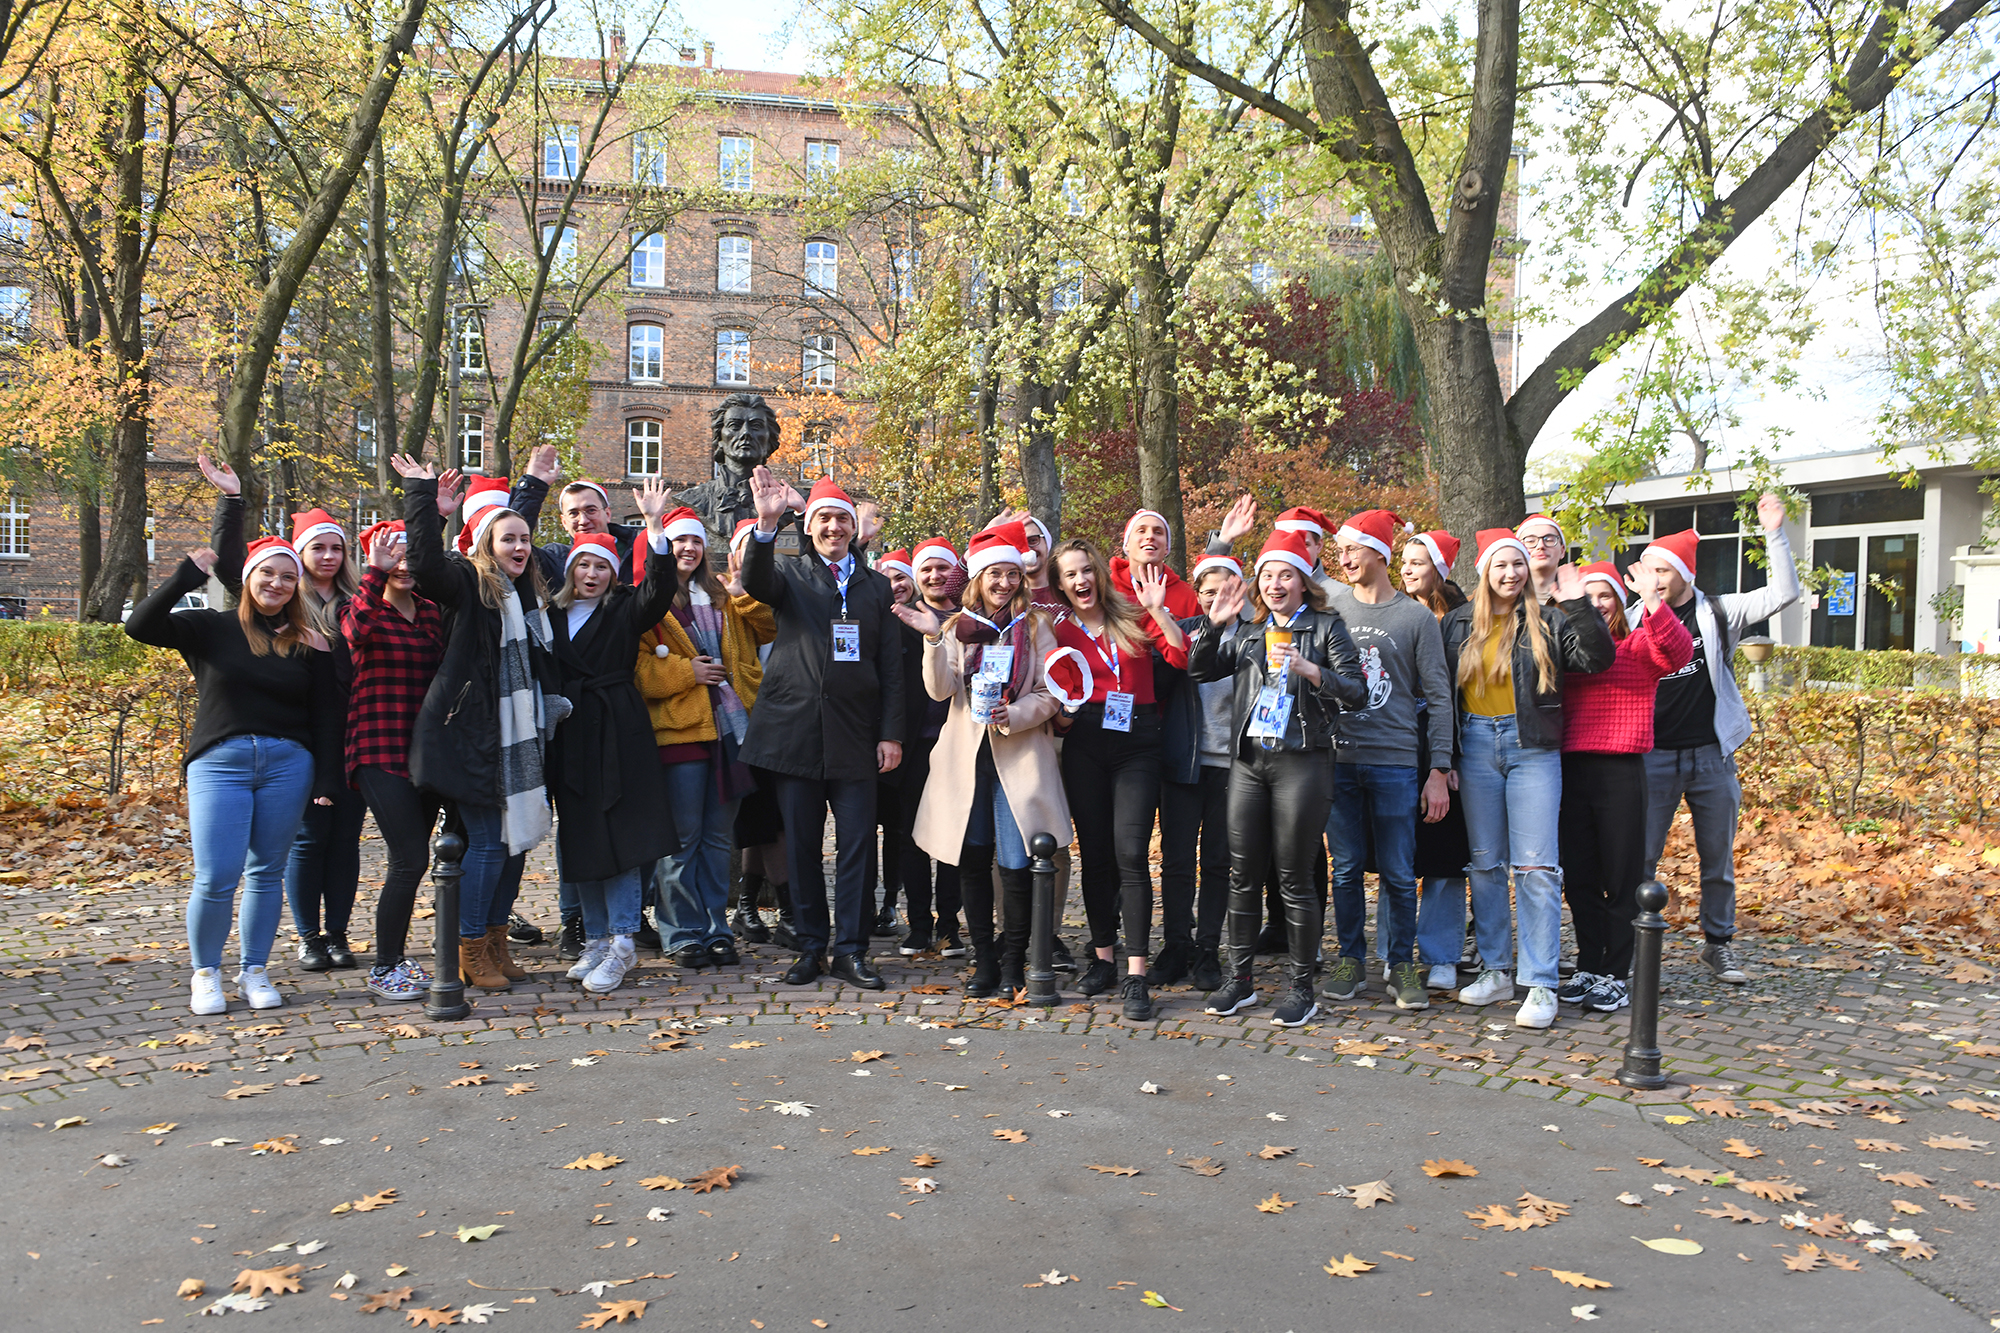 Grupa studentek i studentów w czapkach mikołajkowych pozuje do wspólnego zdjęcia pod popiersiem Tadeusza Kościuszki na Dziedzińcu uczelni. Wśród młodzieży jest też Rektor Andrzej Szarata.